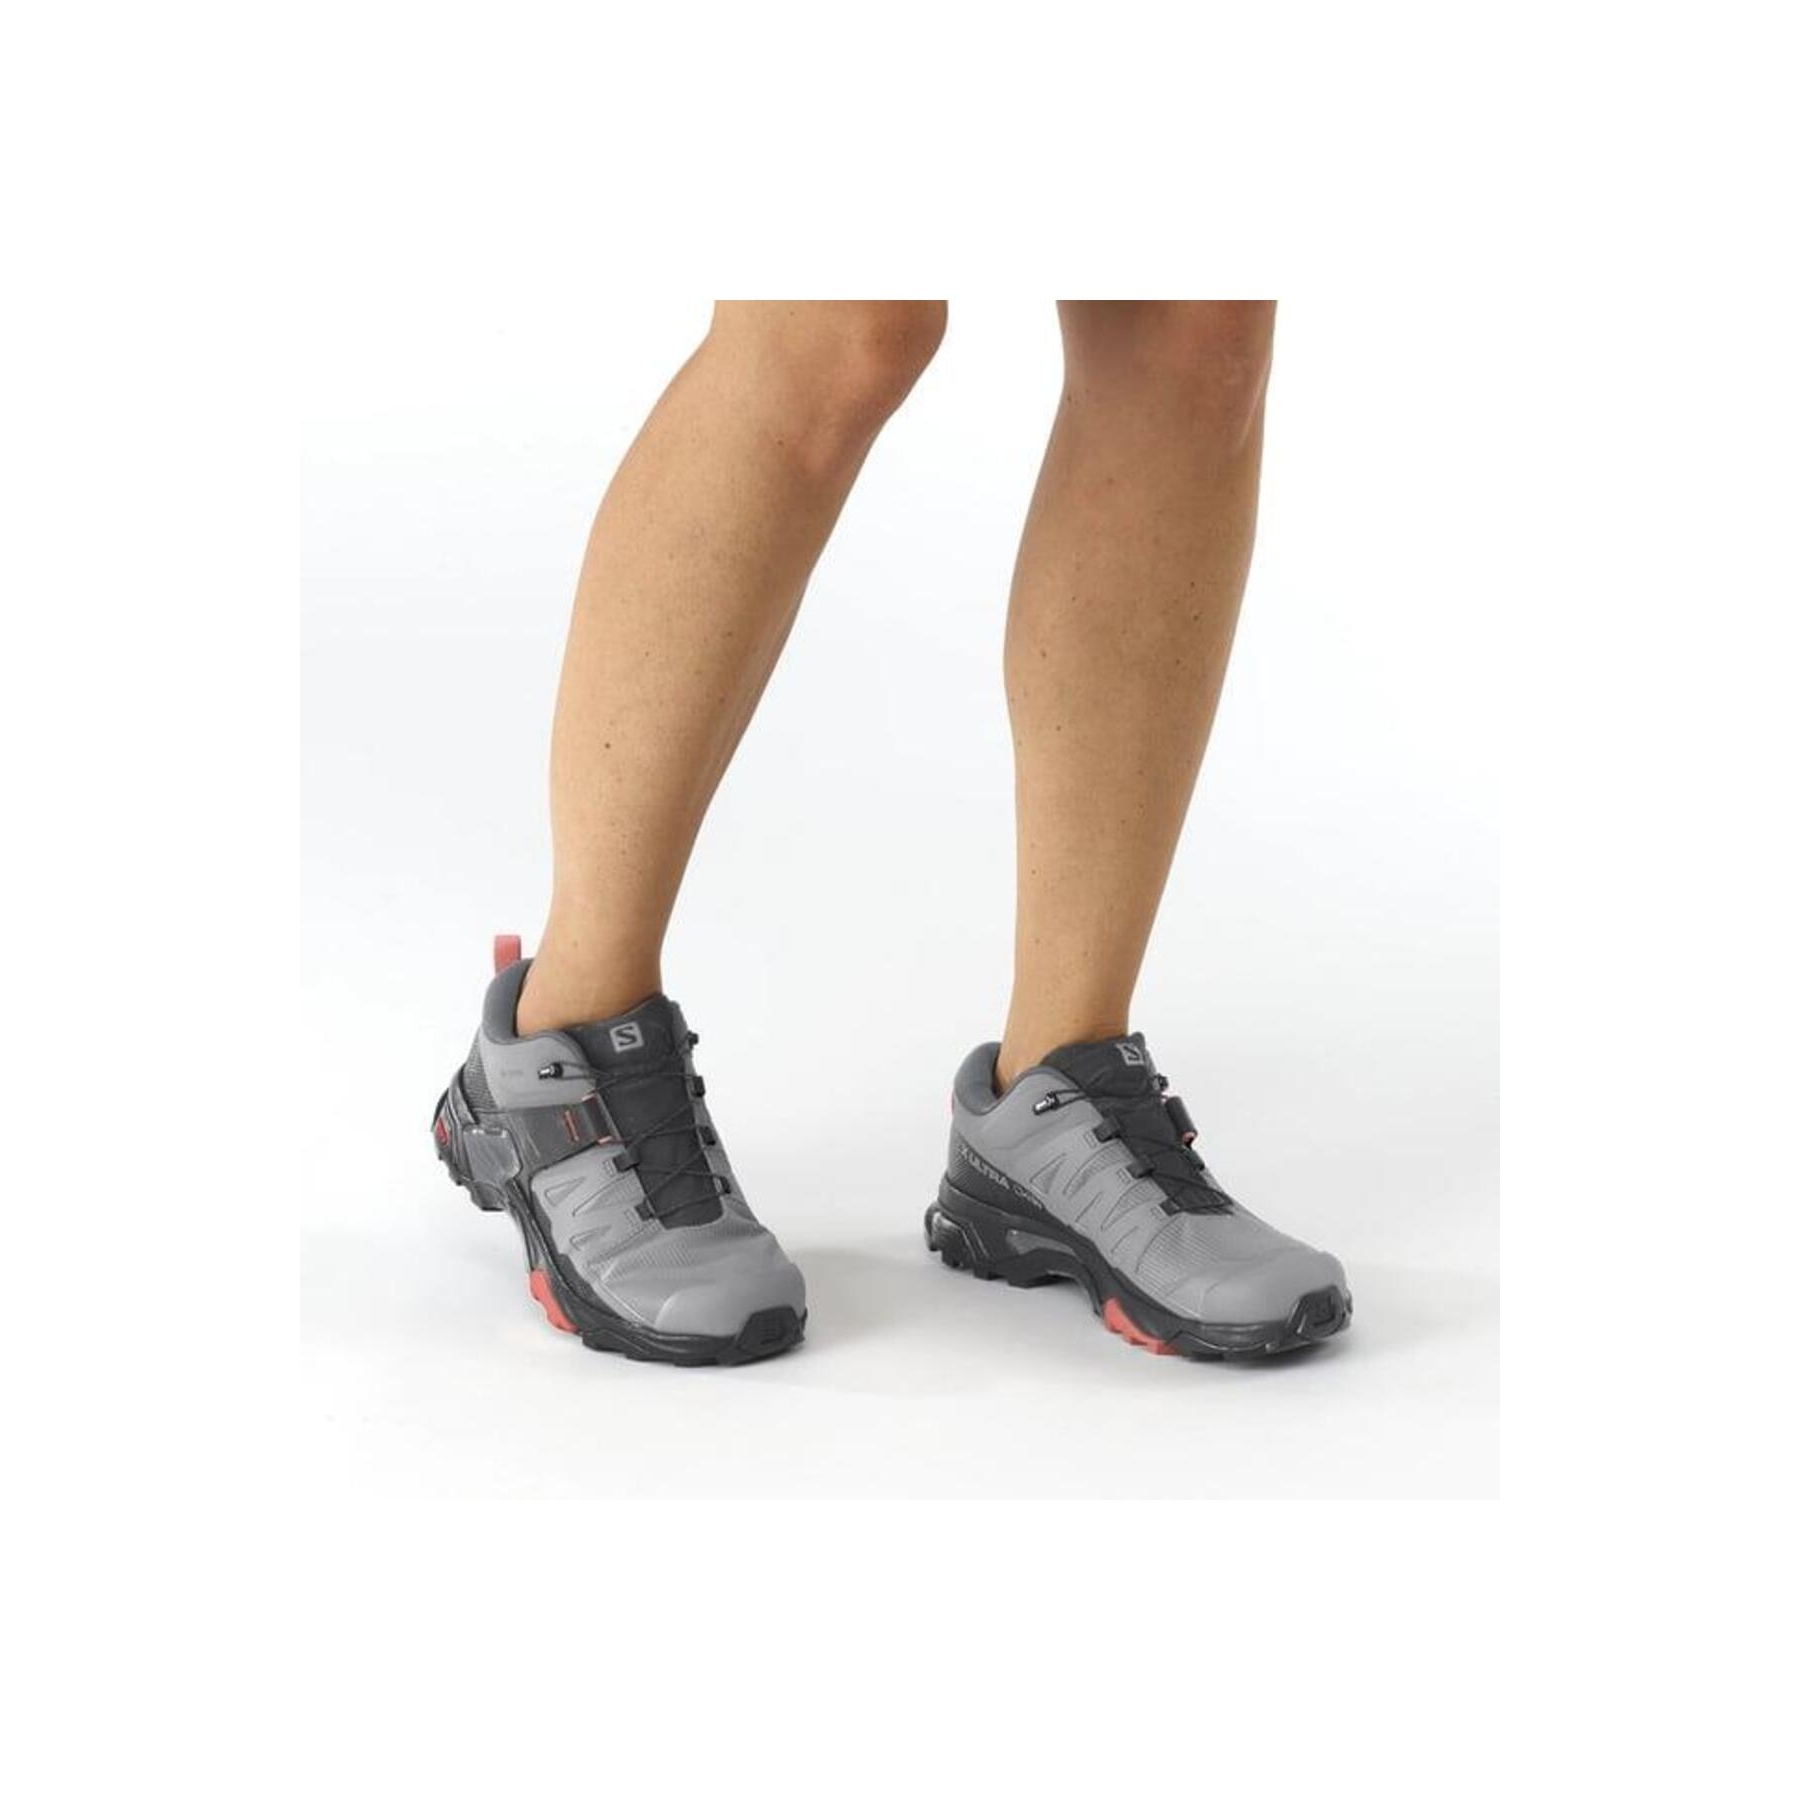 Salomon X Ultra 4 Goretex Kadın Gri Outdoor Ayakkabı (L41623100)